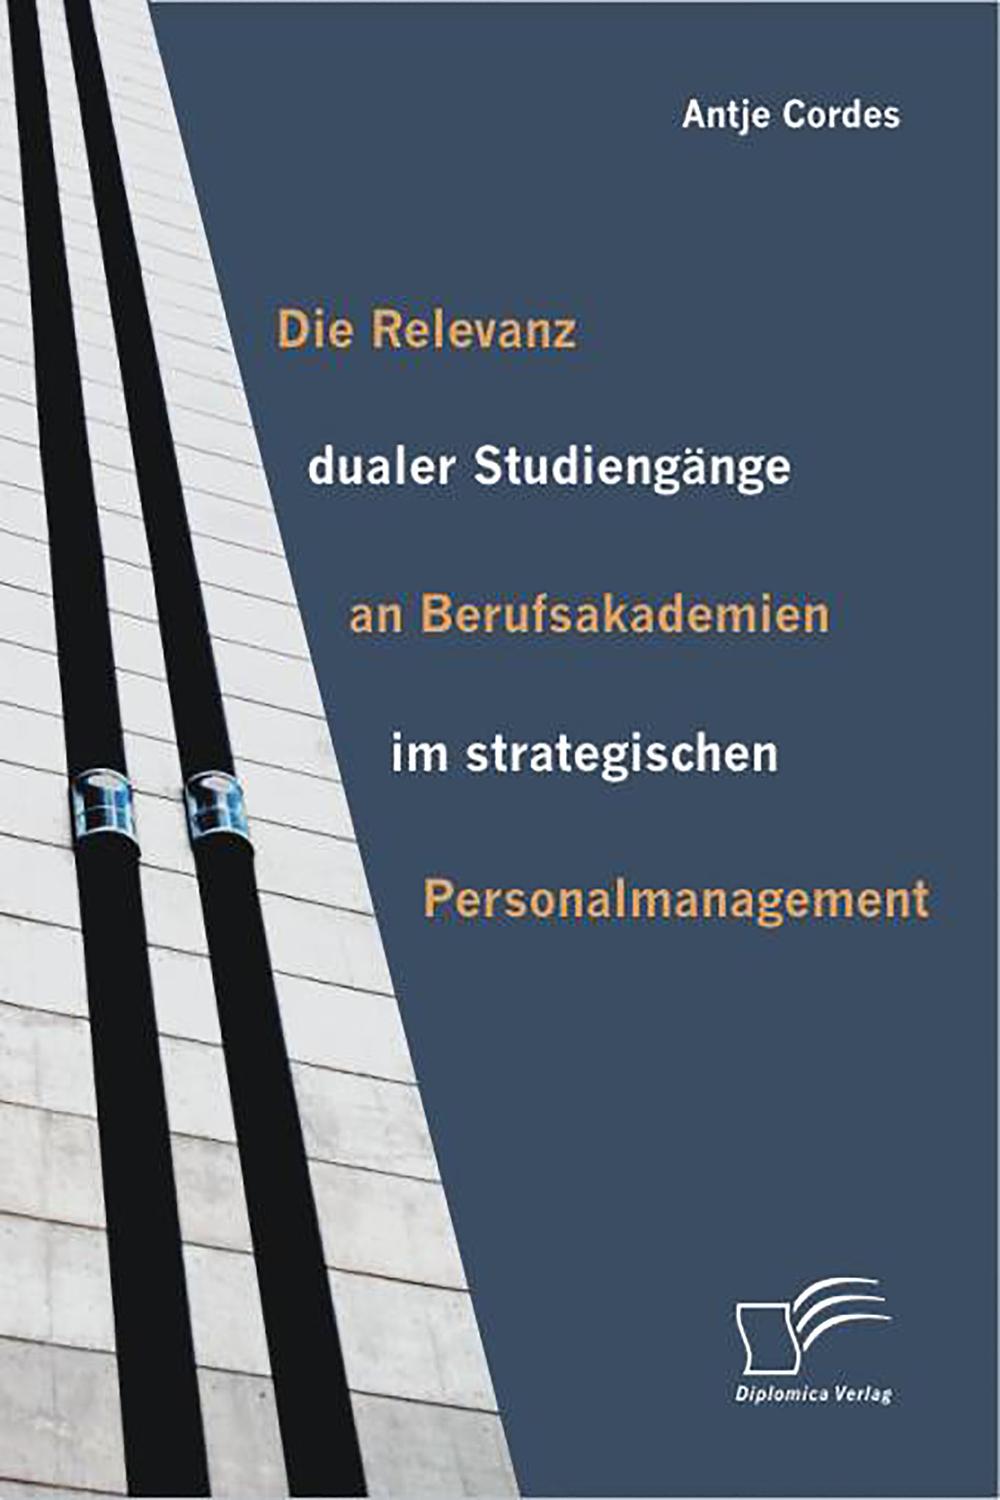 Die Relevanz dualer Studiengänge an Berufsakademien im strategischen Personalmanagement - Antje Cordes